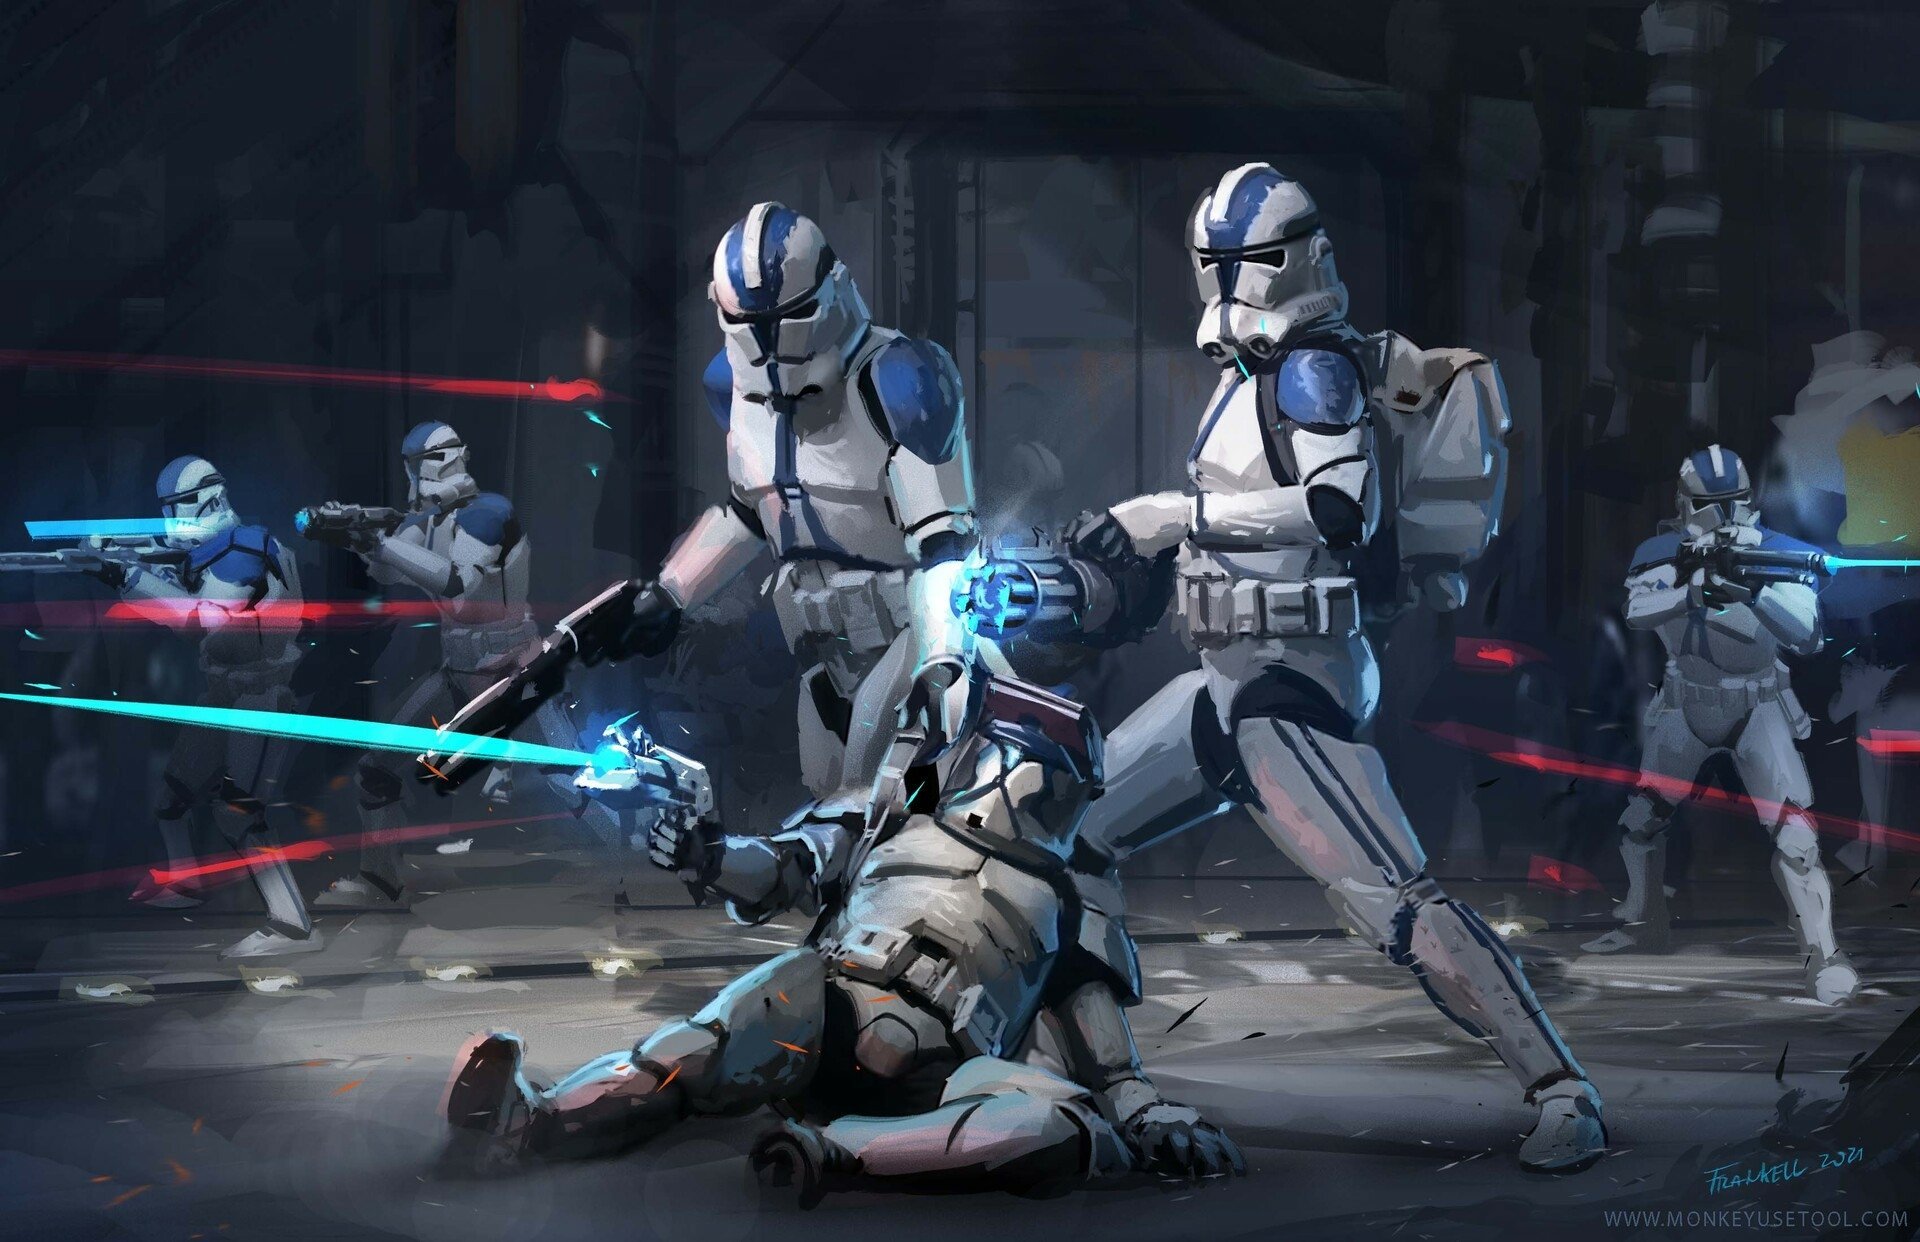 501st Clone Troopers, Star Wars. FAN ART